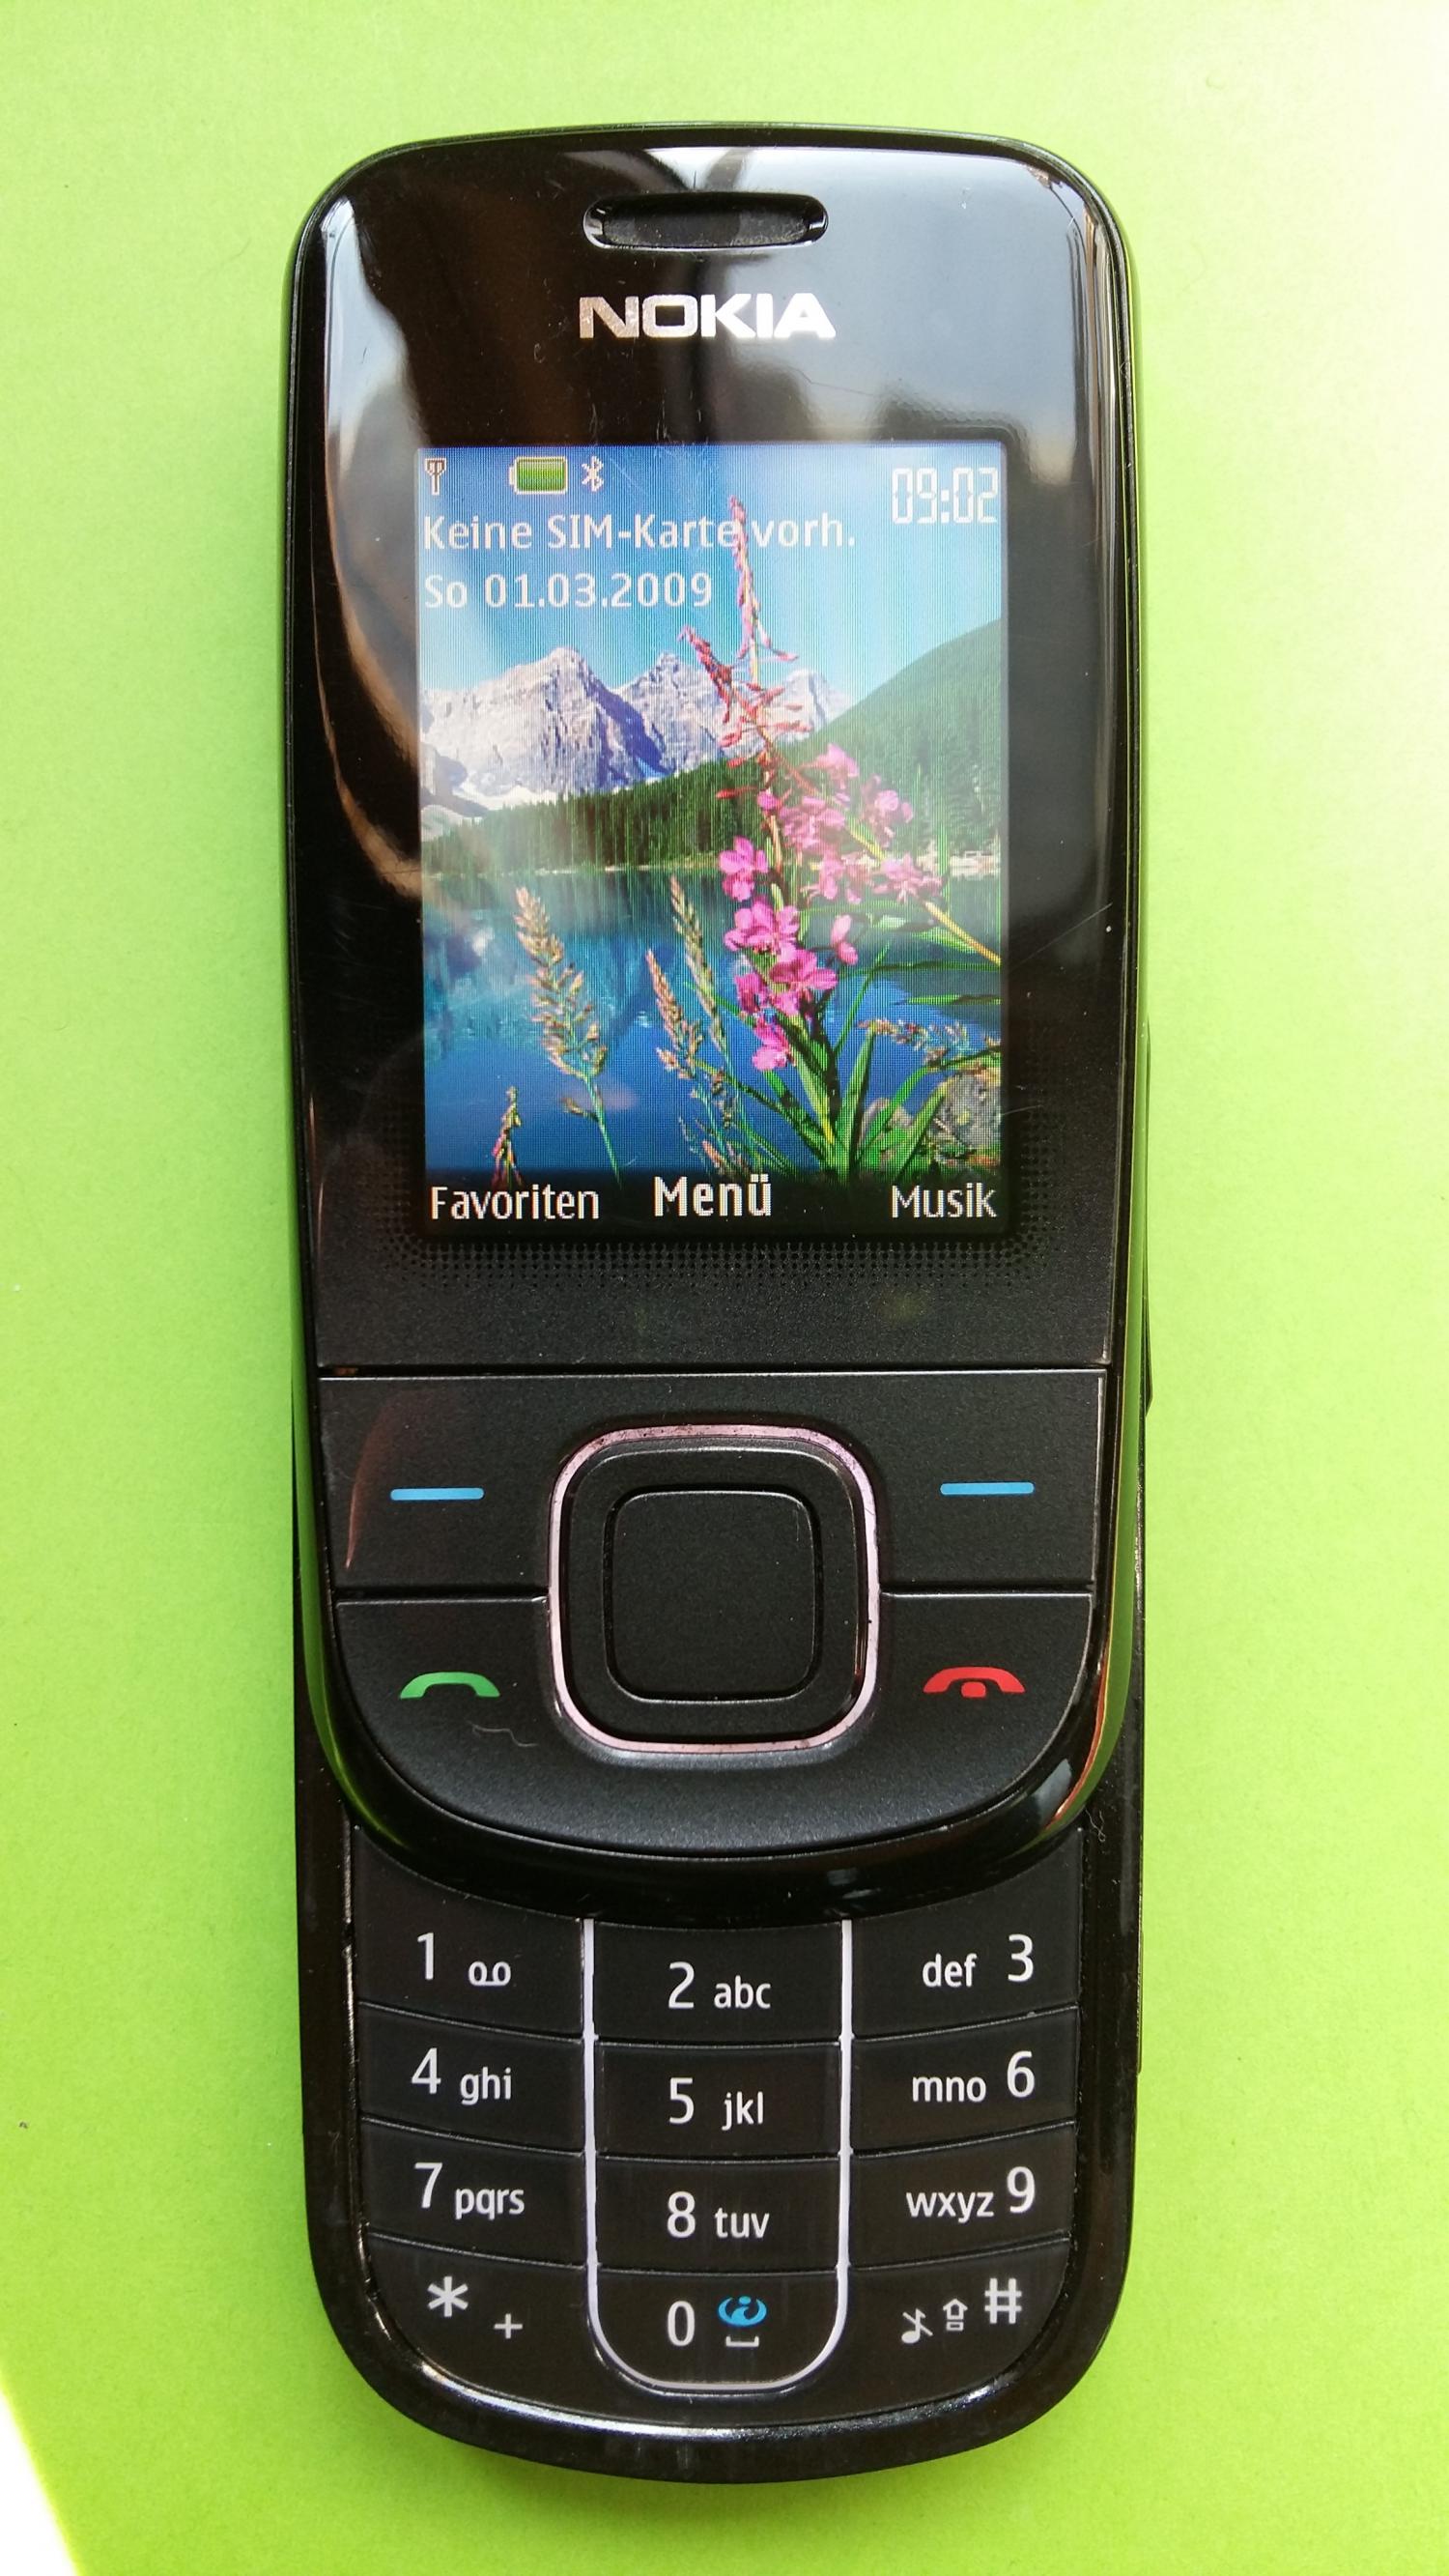 image-7301041-Nokia 3600S (1)2.jpg